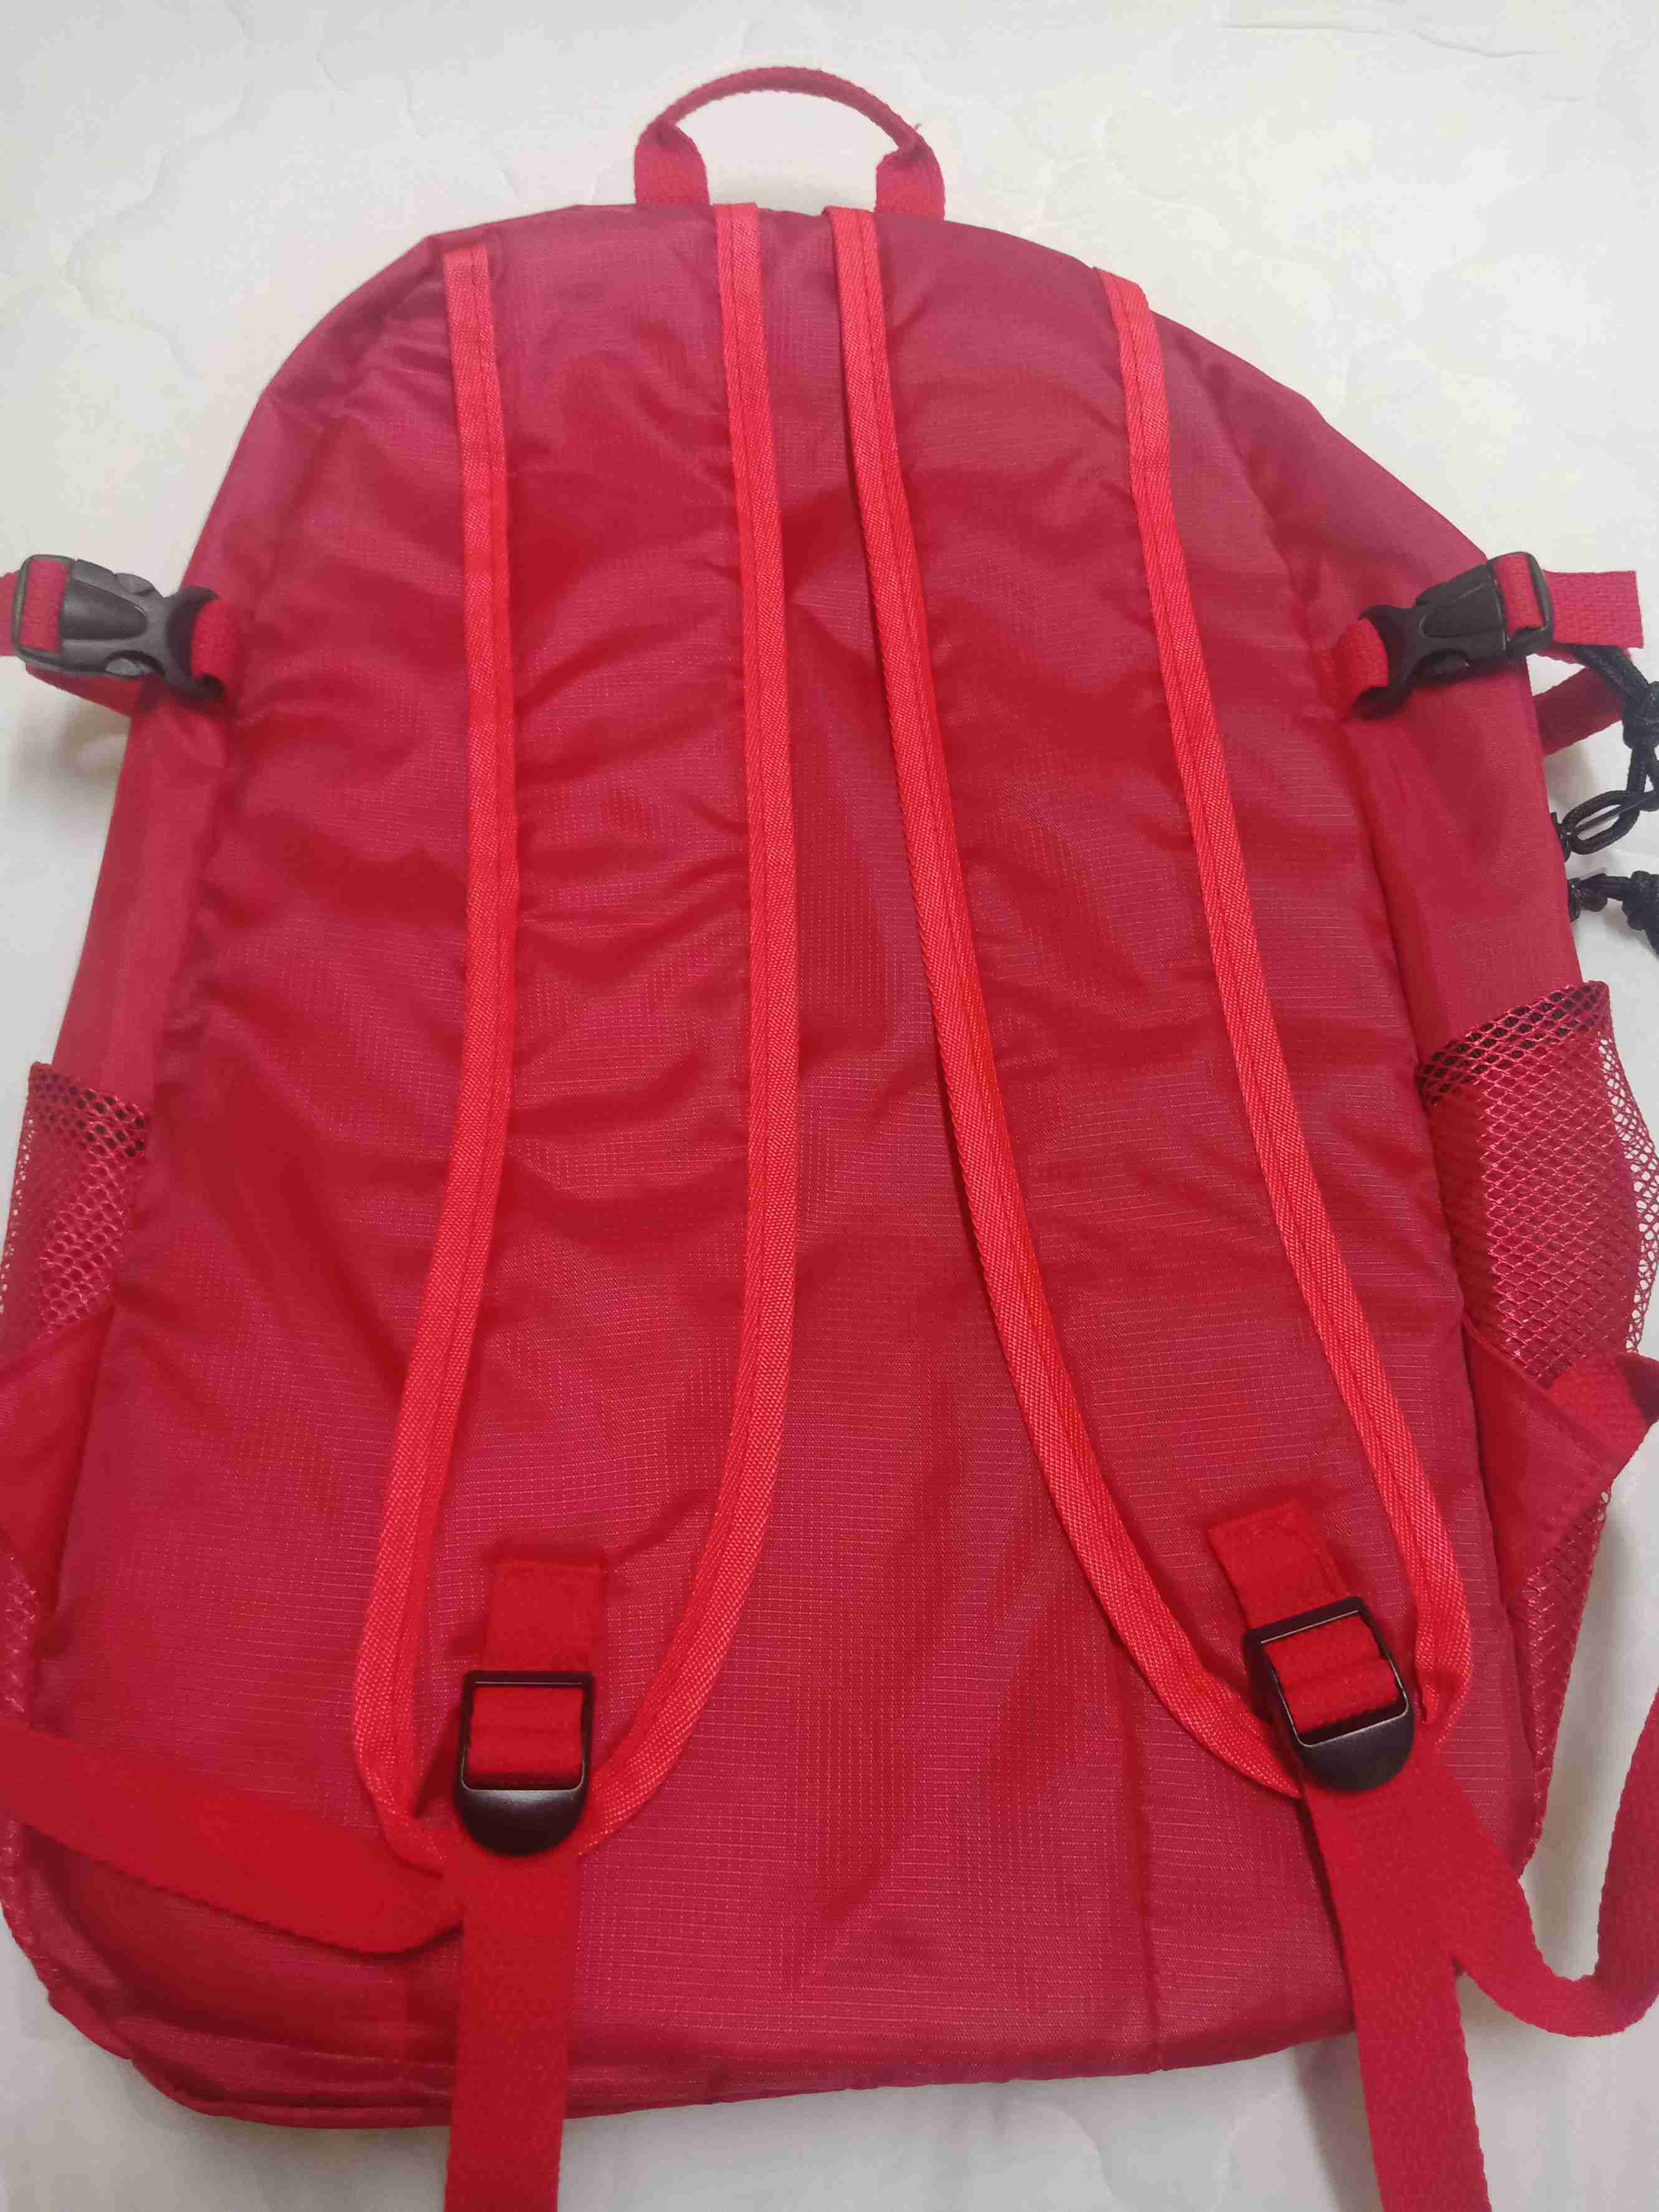 台灣立刻出 現貨 Supreme背包 紅色 全新 潮牌 限量 袋子 後背包 旅行包 行李袋 雙肩包